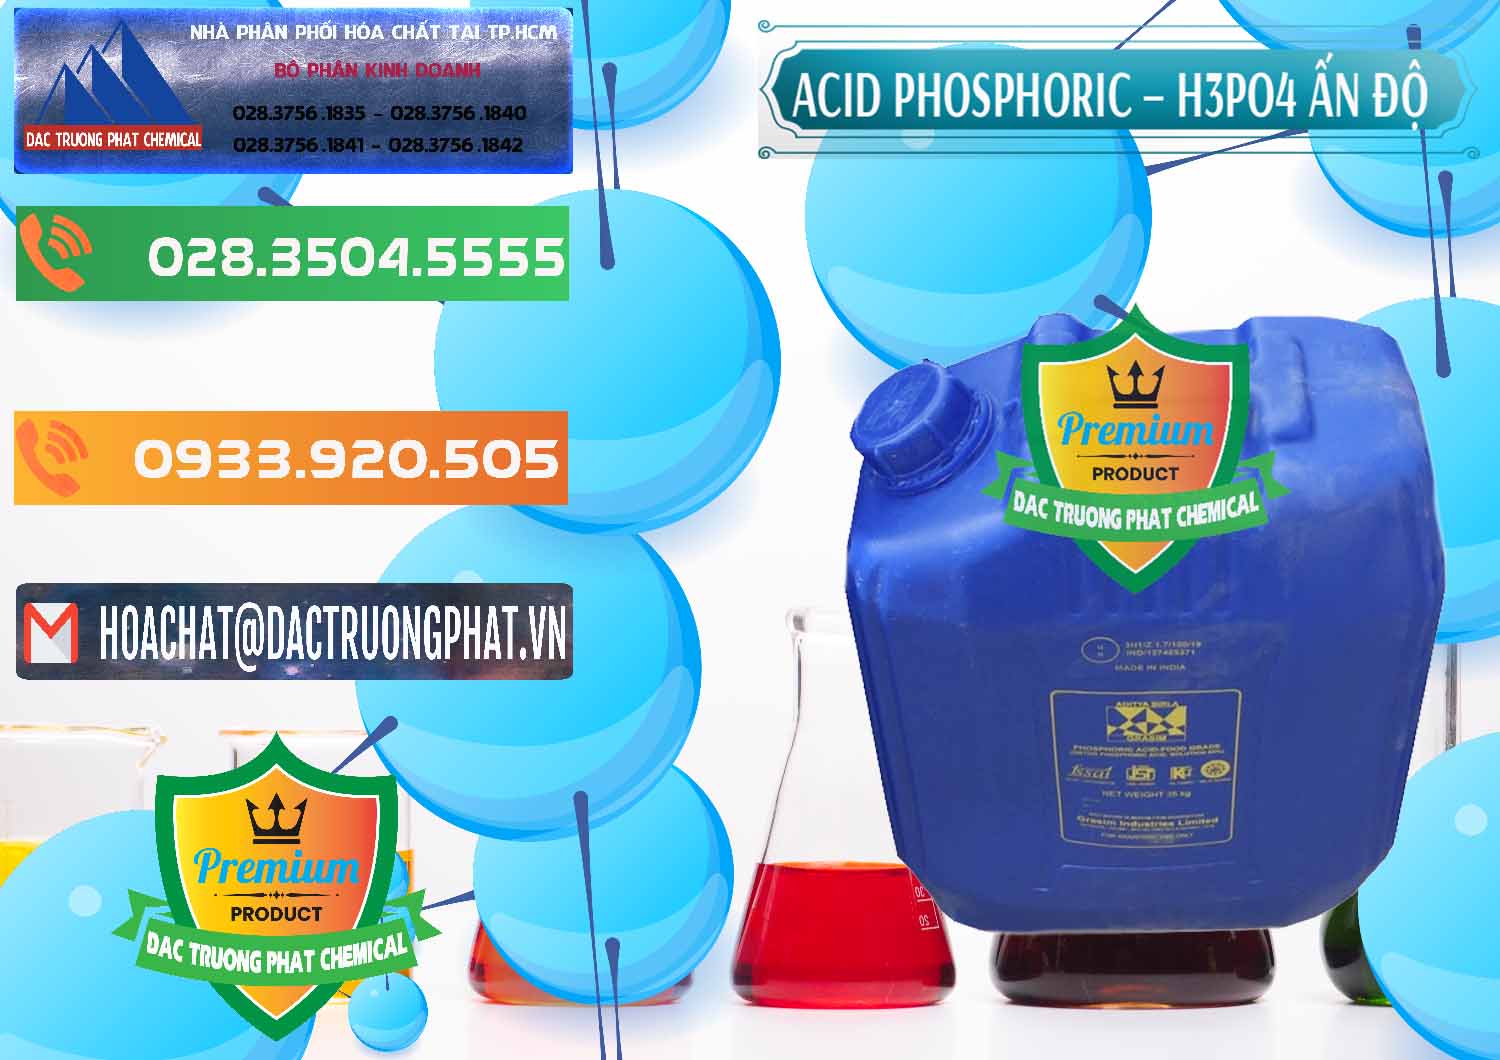 Chuyên bán _ cung ứng Axit Phosphoric H3PO4 85% Ấn Độ - 0350 - Nơi chuyên cung cấp & kinh doanh hóa chất tại TP.HCM - hoachatxulynuoc.com.vn